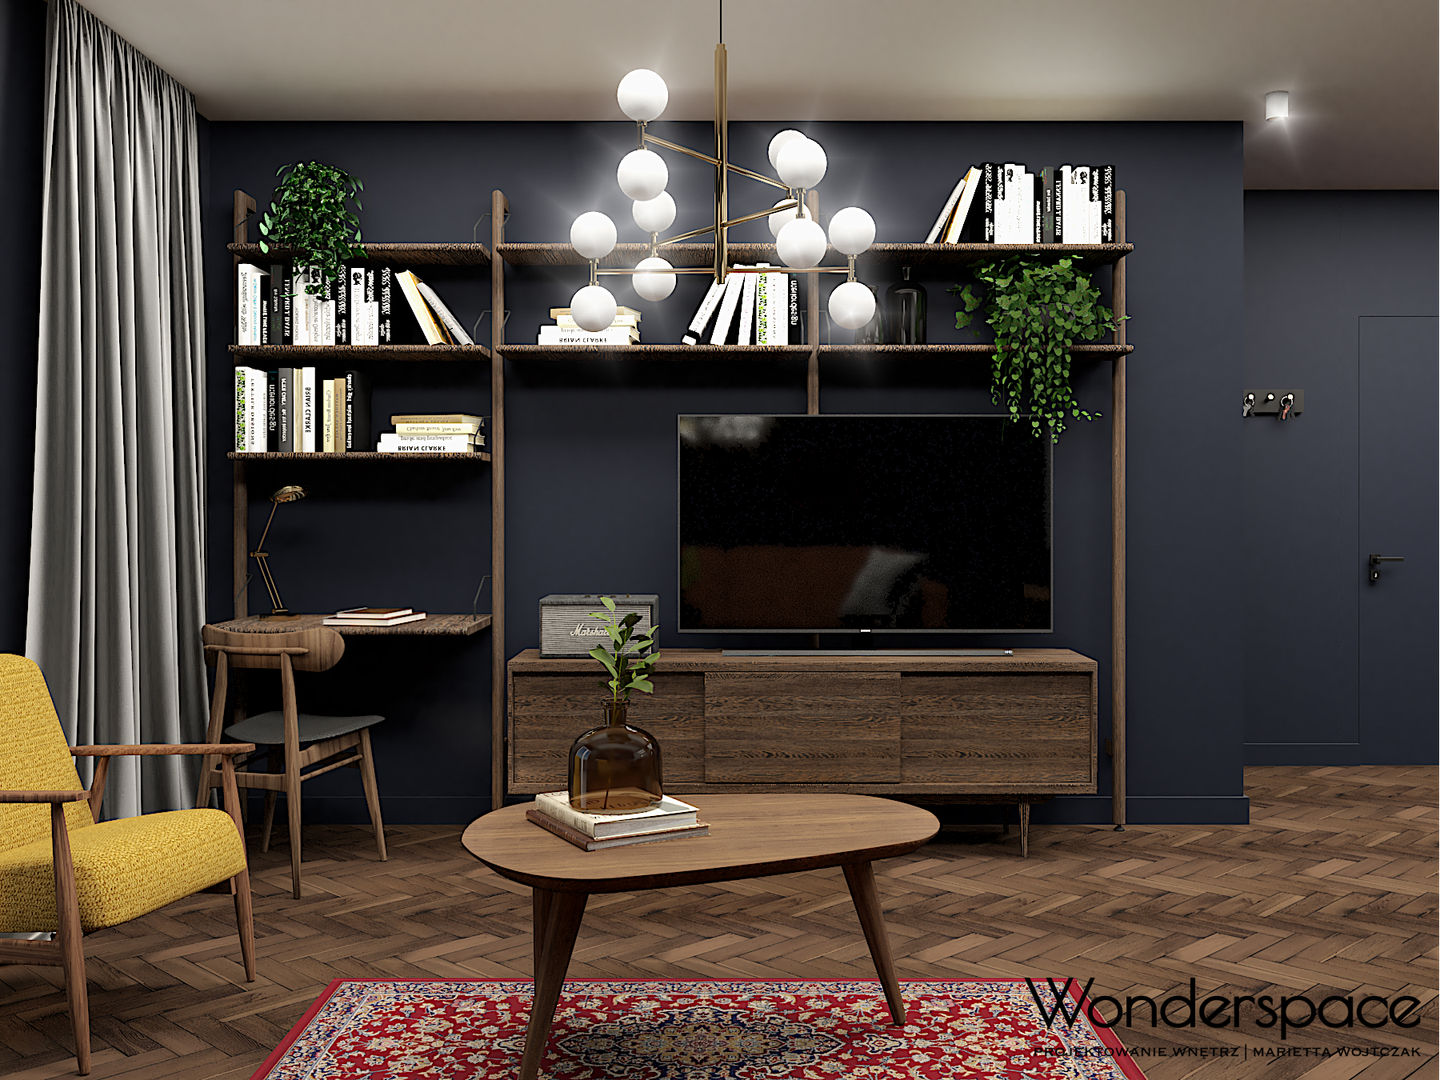 Eklektyczne mieszkanie w Warszawie, Wonderspace Wonderspace 에클레틱 거실